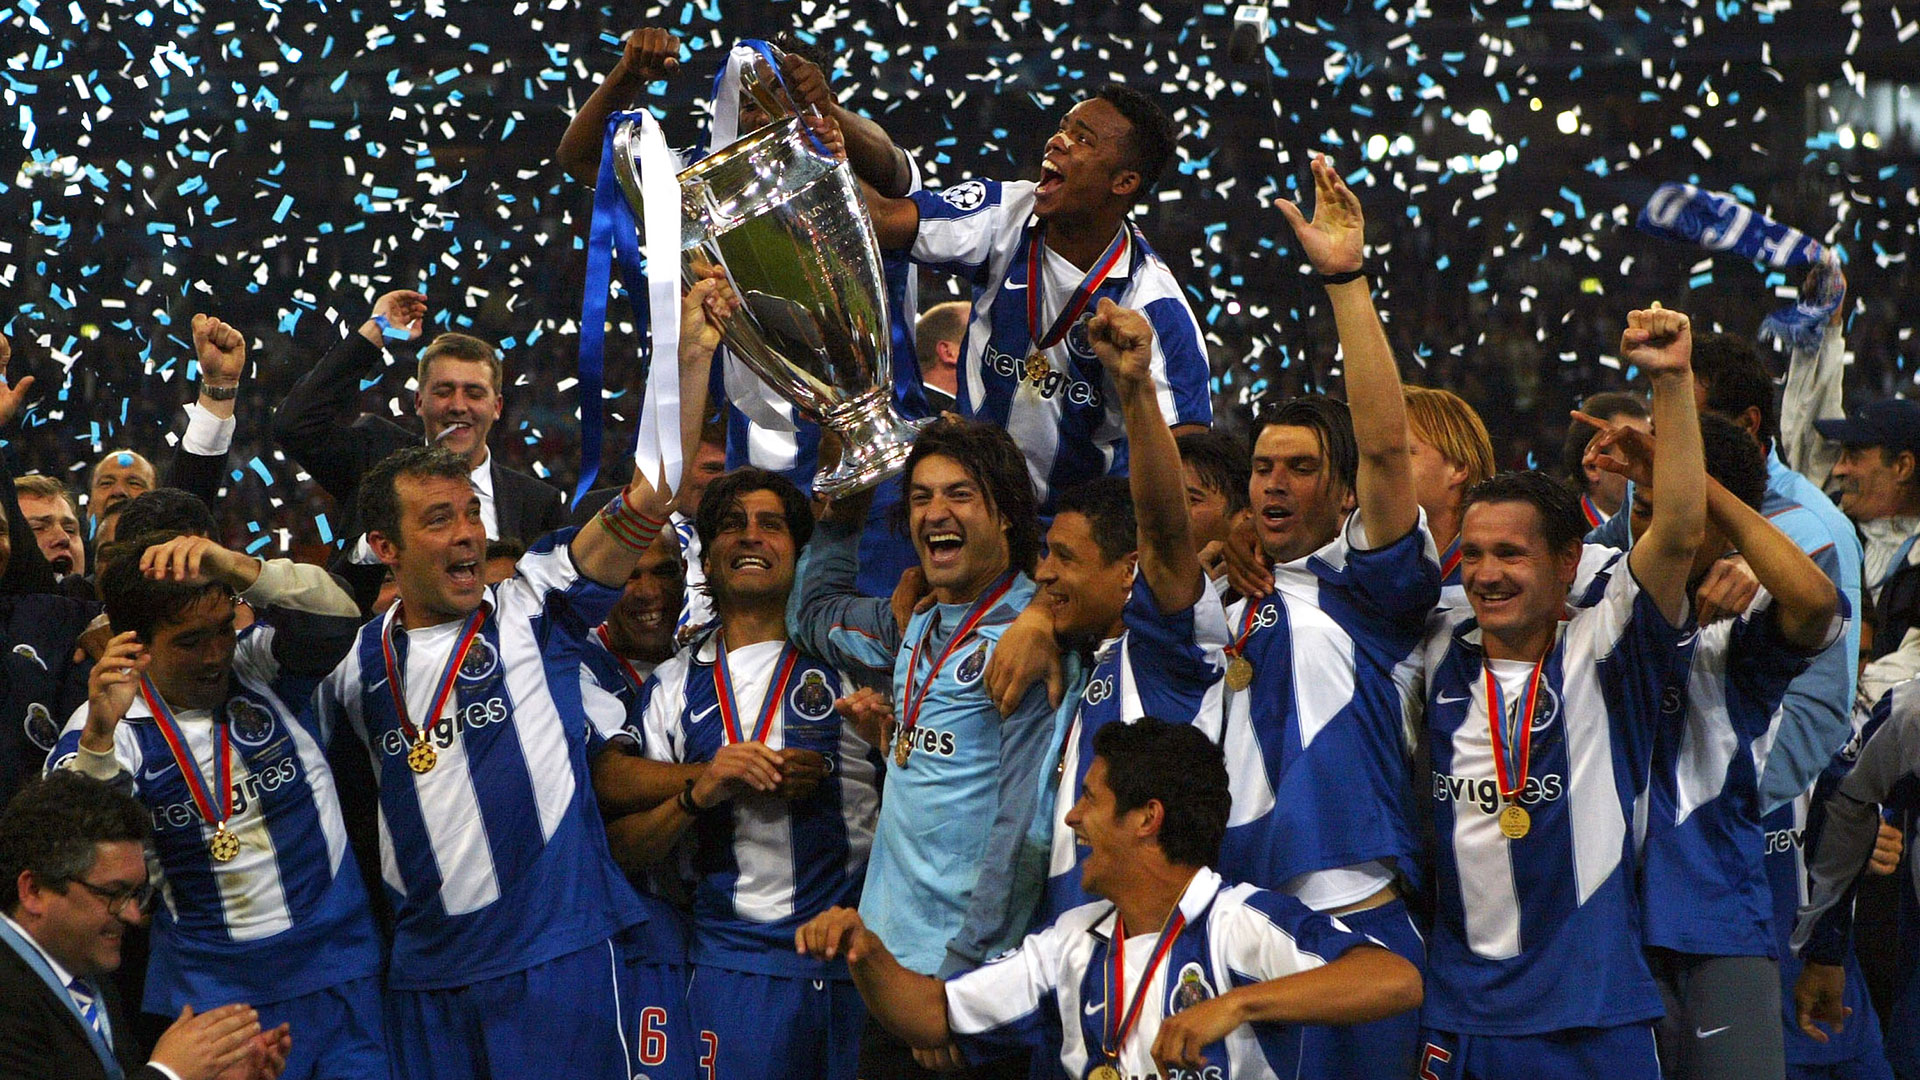 Porto Champions League 2004 - Goal.com